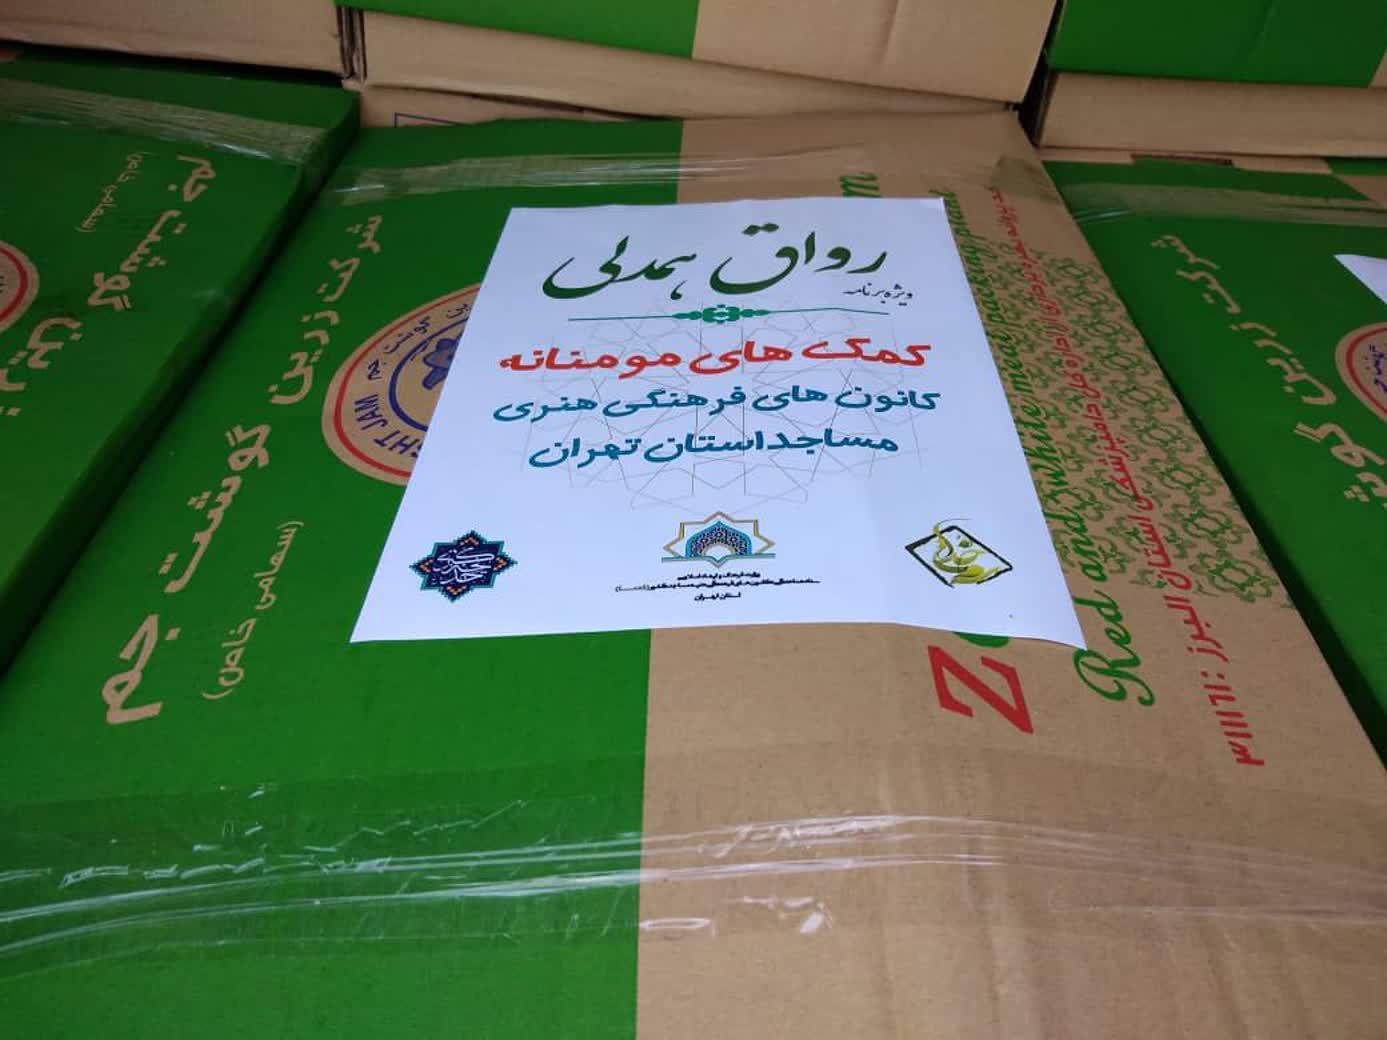 ۲۴۰۰ بسته گوشت در قالب طرح رواق همدلي ميان نيازمندان توزيع شد